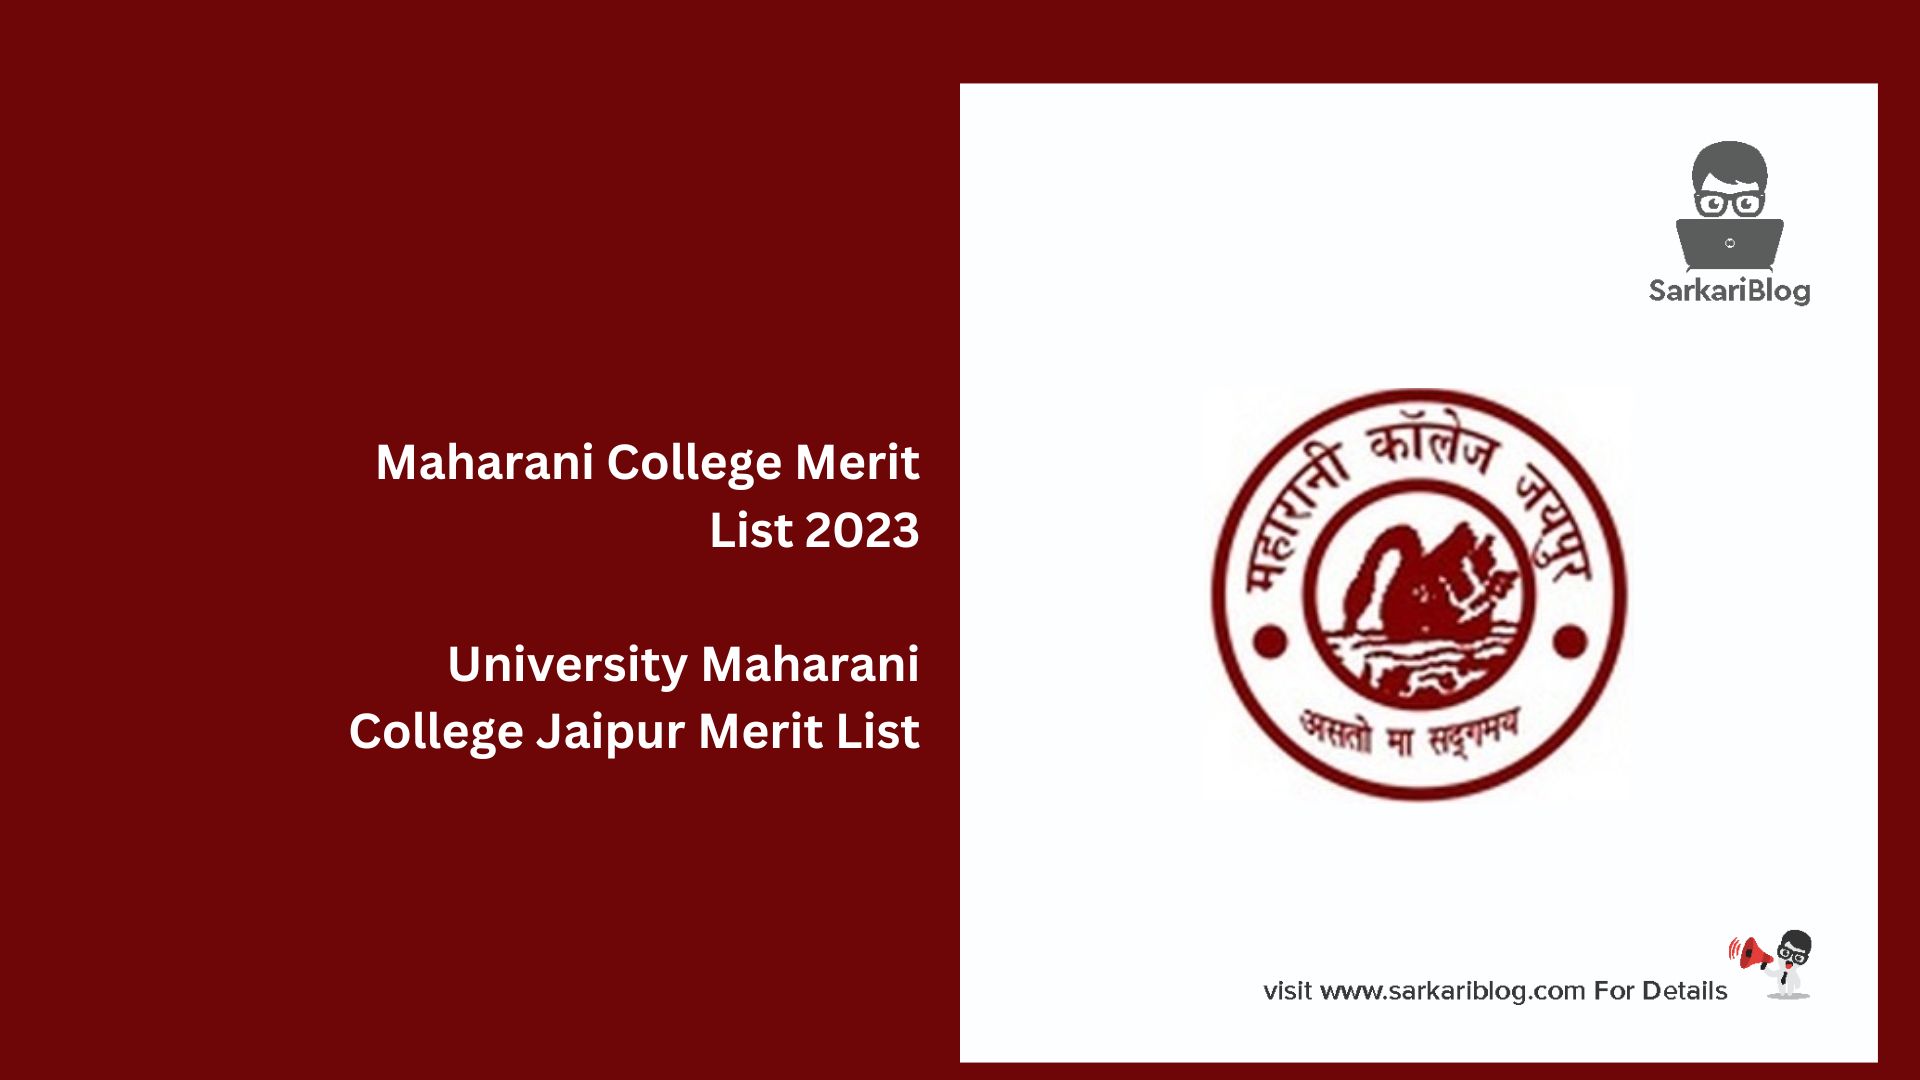 Maharani College Merit List 2023